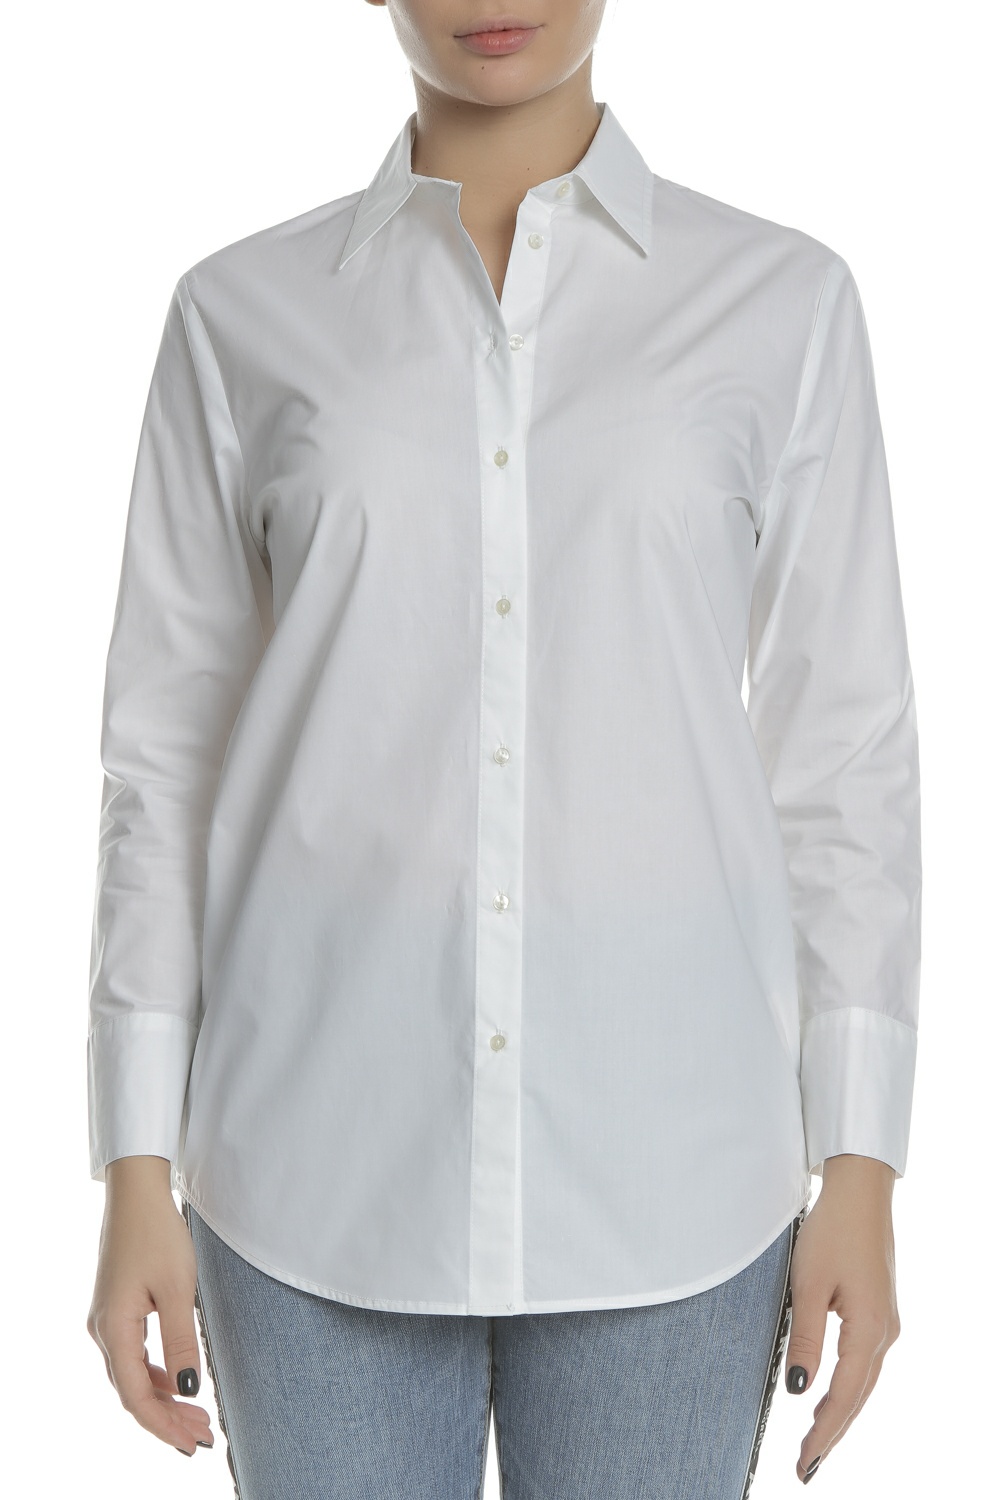 Γυναικεία/Ρούχα/Πουκάμισα/Μακρυμάνικα SCOTCH & SODA - Γυναικείο μακρυμάνικο πουκάμισο SCOTCH & SODA BOYFRIEND FIT λευκό